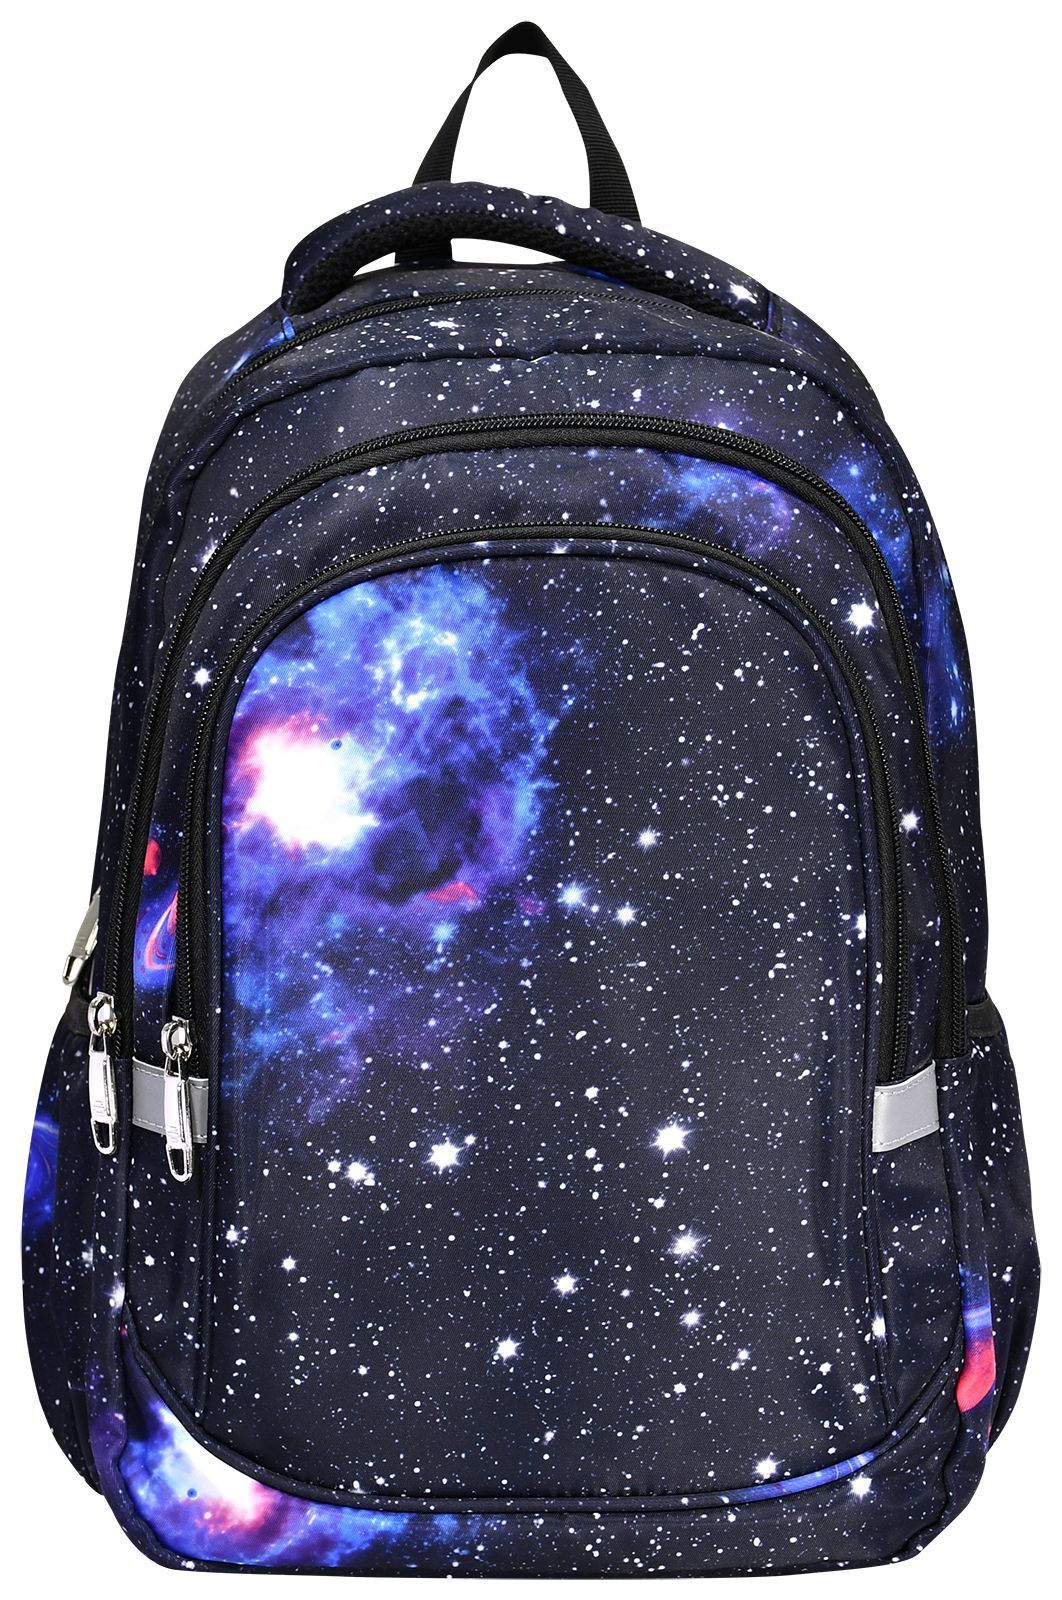 Рюкзак Creativiki универсальный, космос, чёрный, трёхсекционный, 20 л, 40x28x18, 1шт.